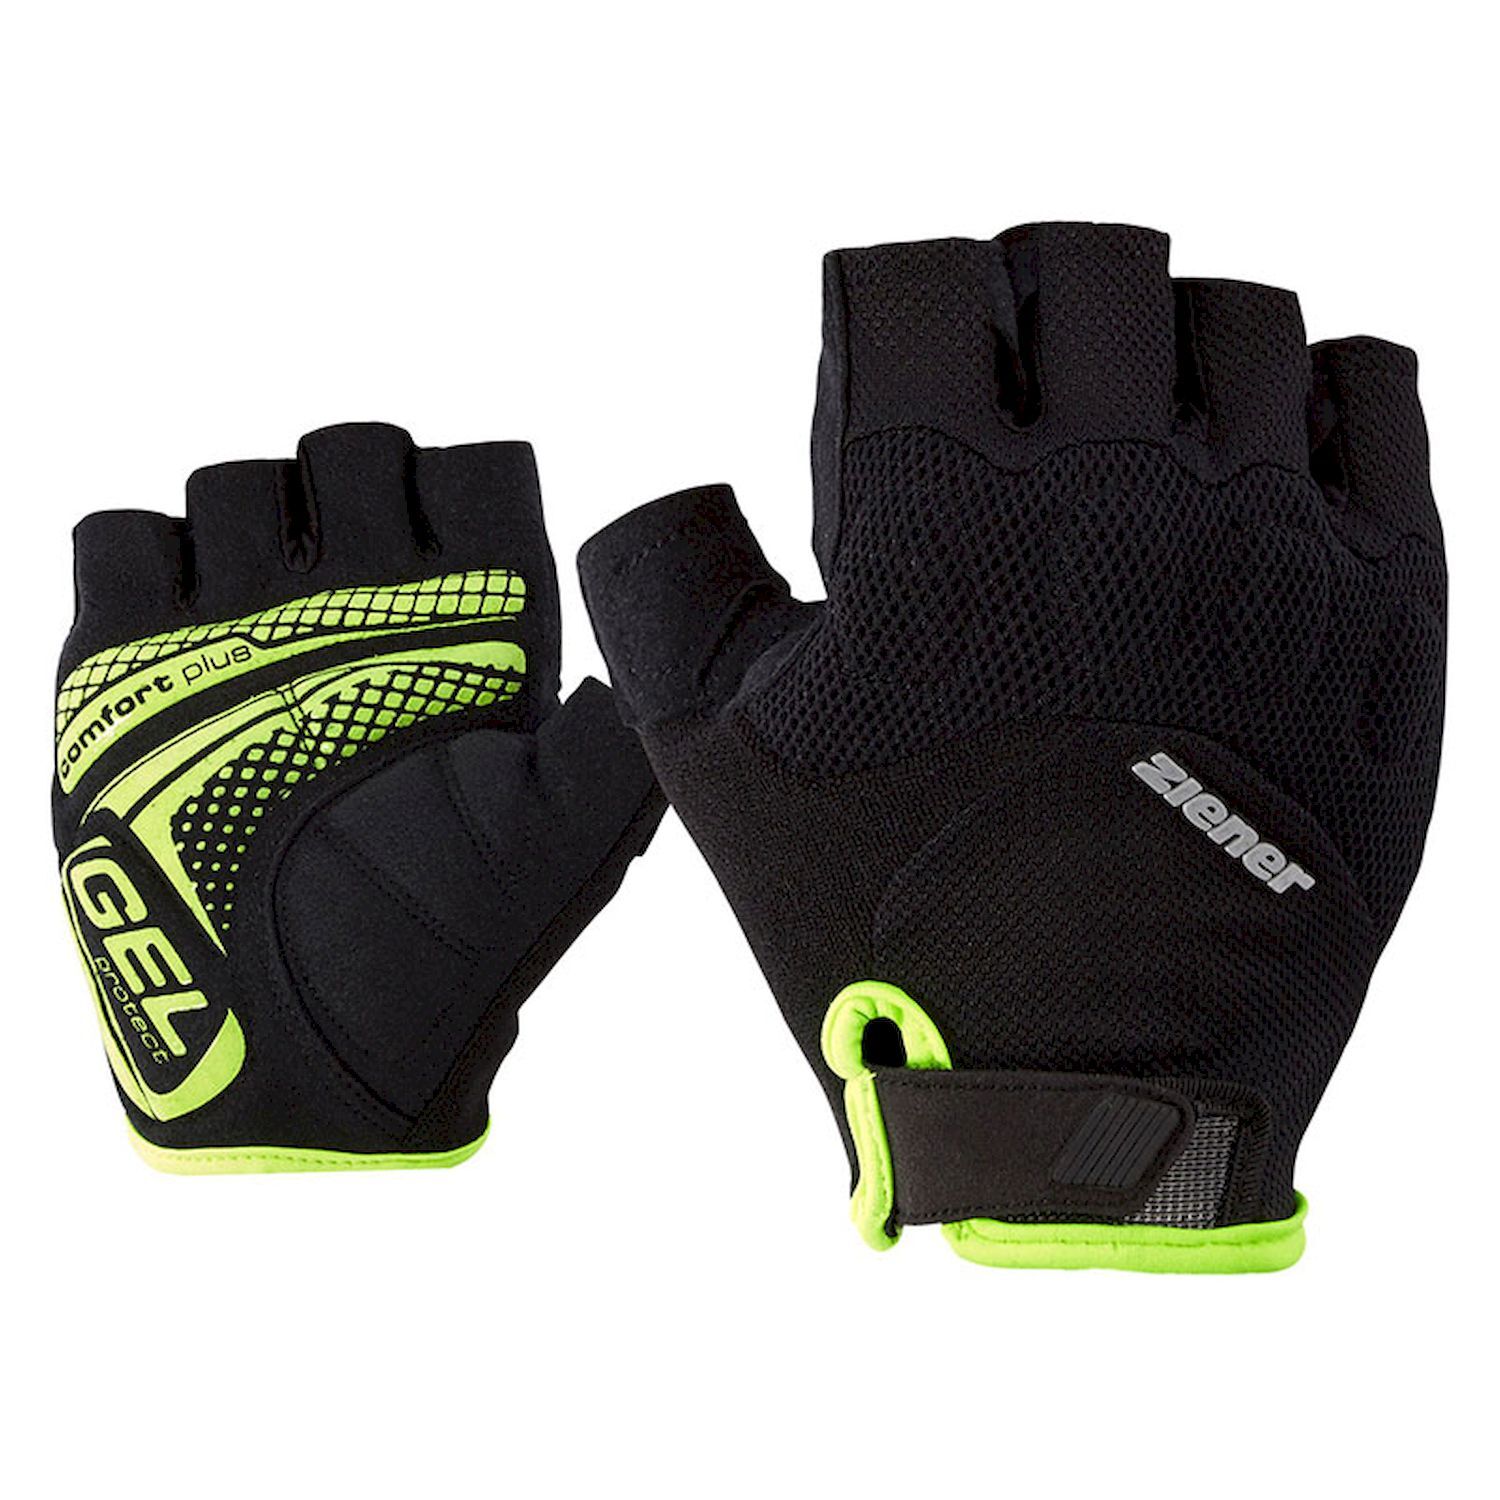 Ziener Colit - Cycling gloves - Men's